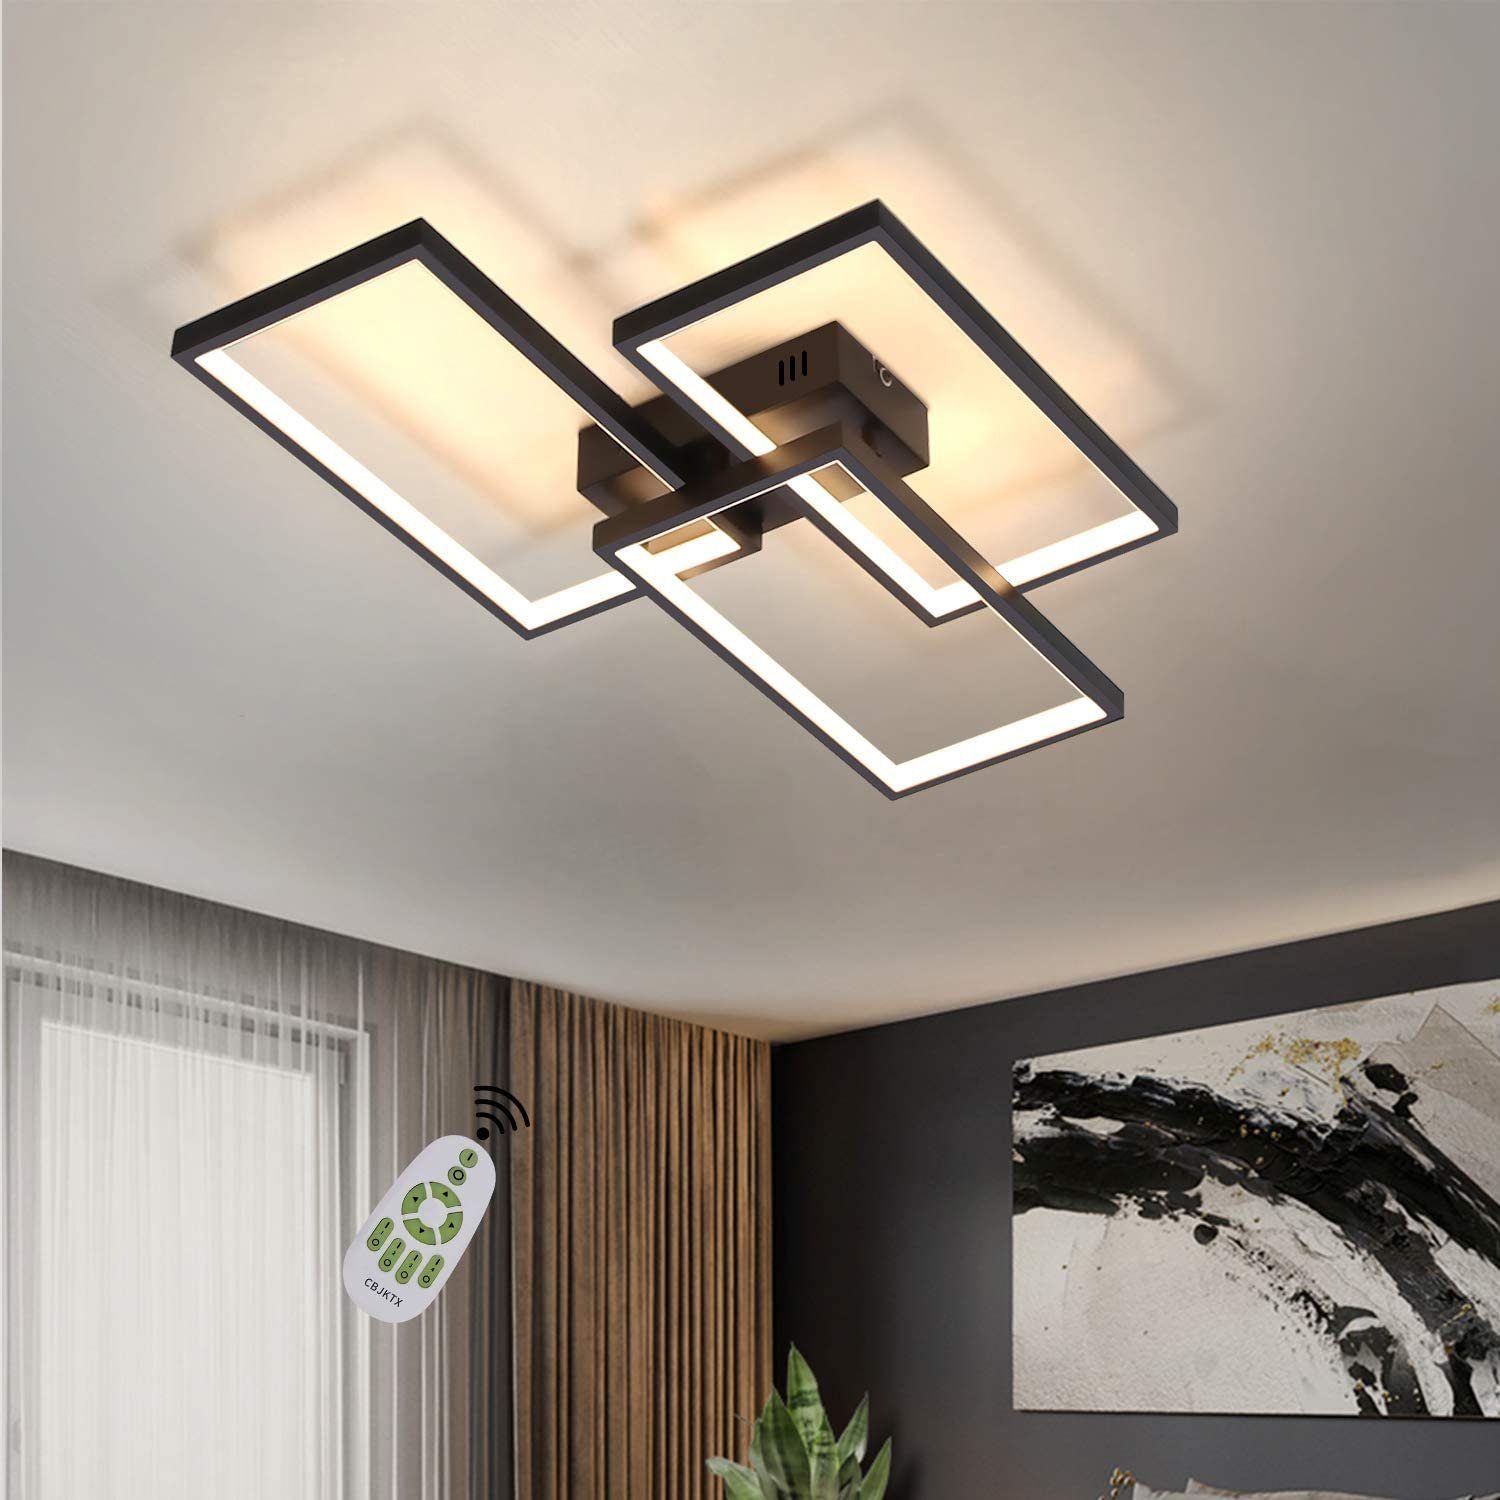 Moderne LED Decken Lampen dimmbar Flur Ess Wohn Schlaf Zimmer Raum Beleuchtung 